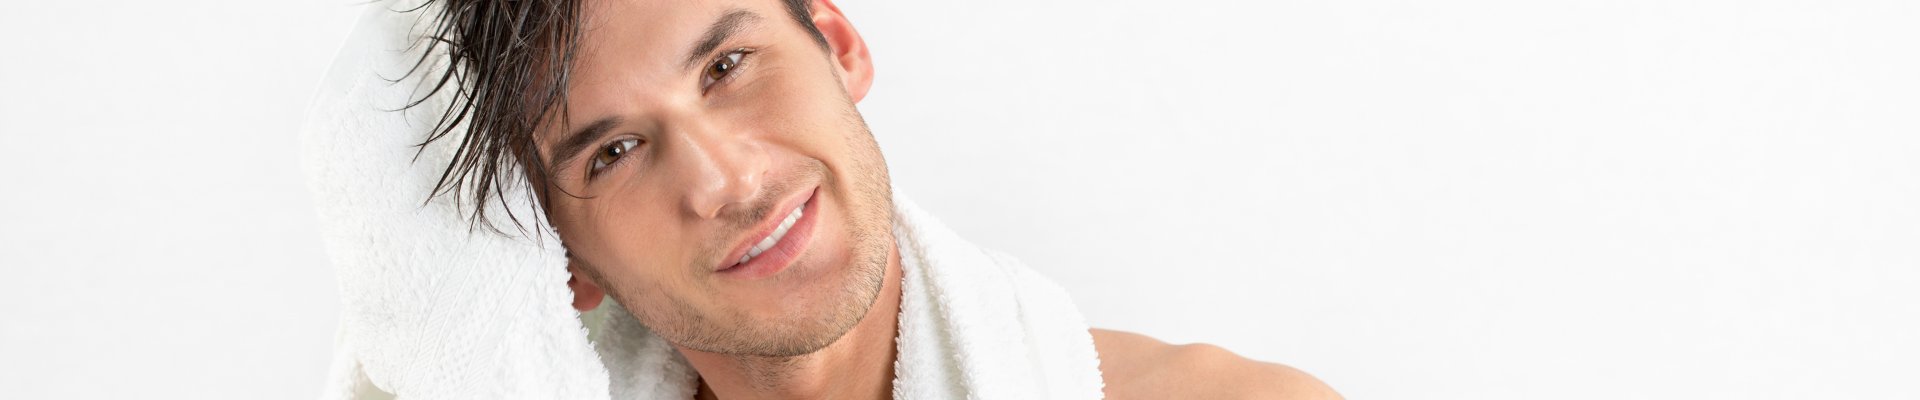 Men's Hair - Silky Hair - Healthier Hair 